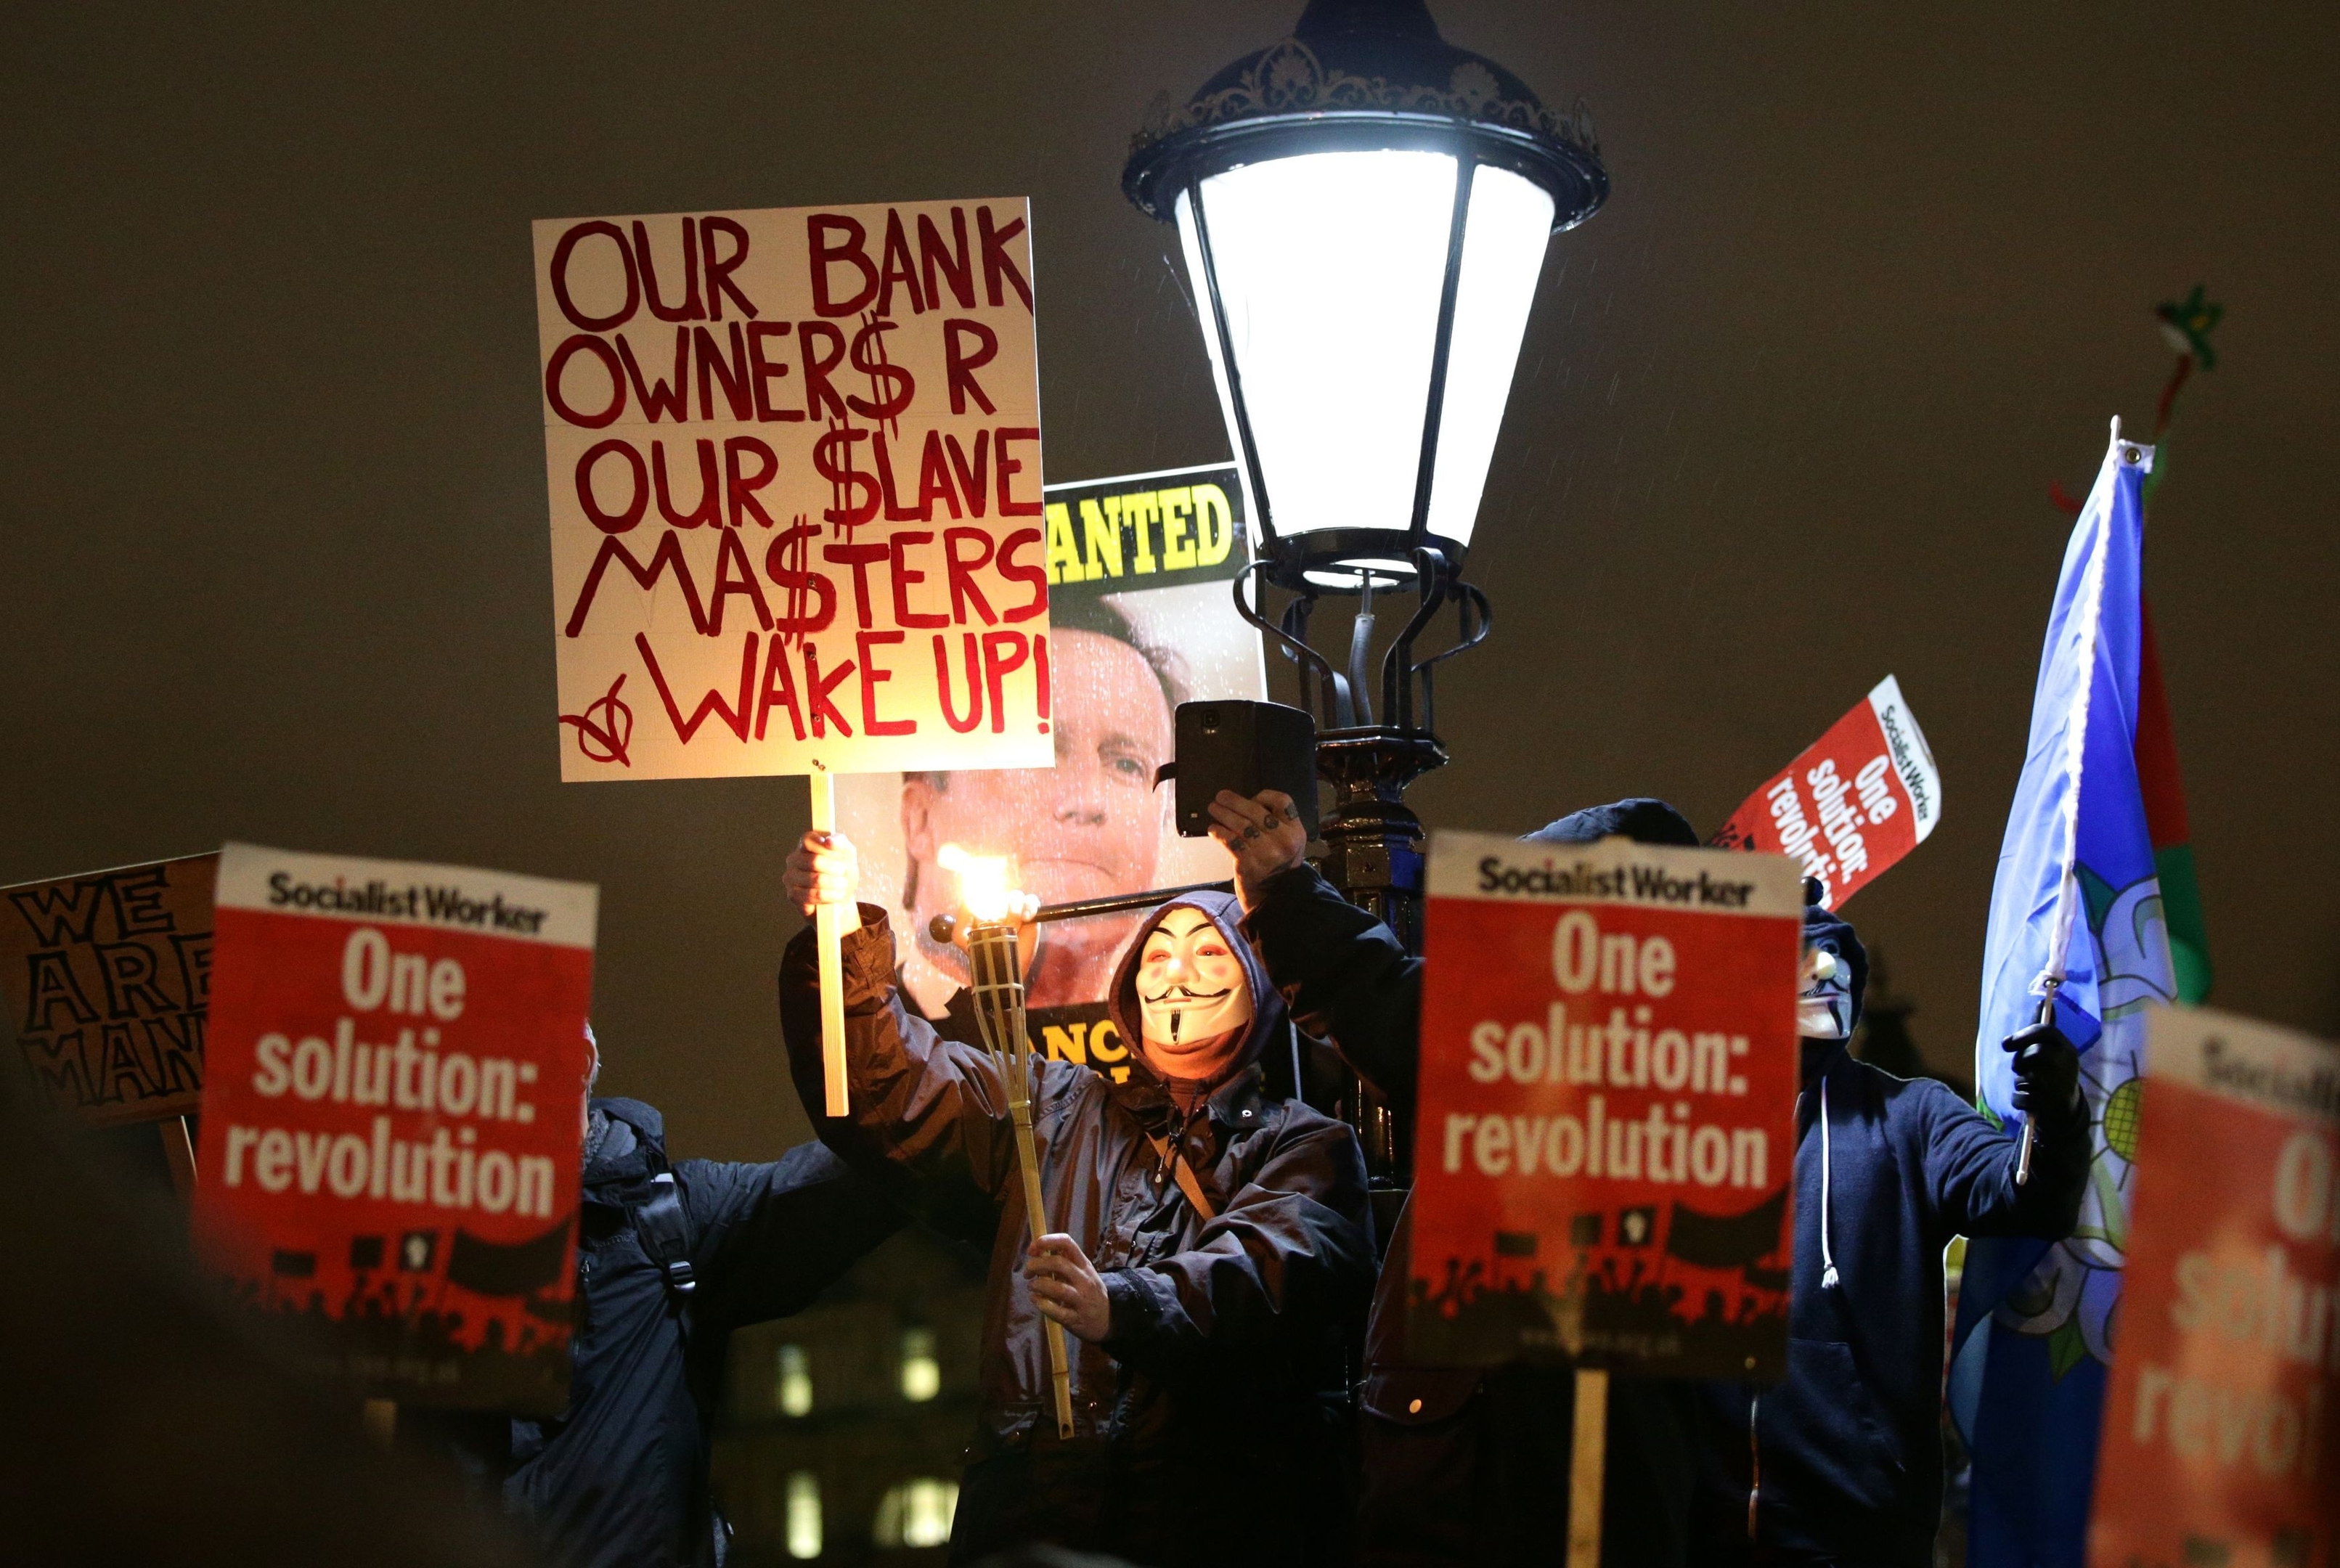 Protestors demonstrate in Trafalgar Square, London, 